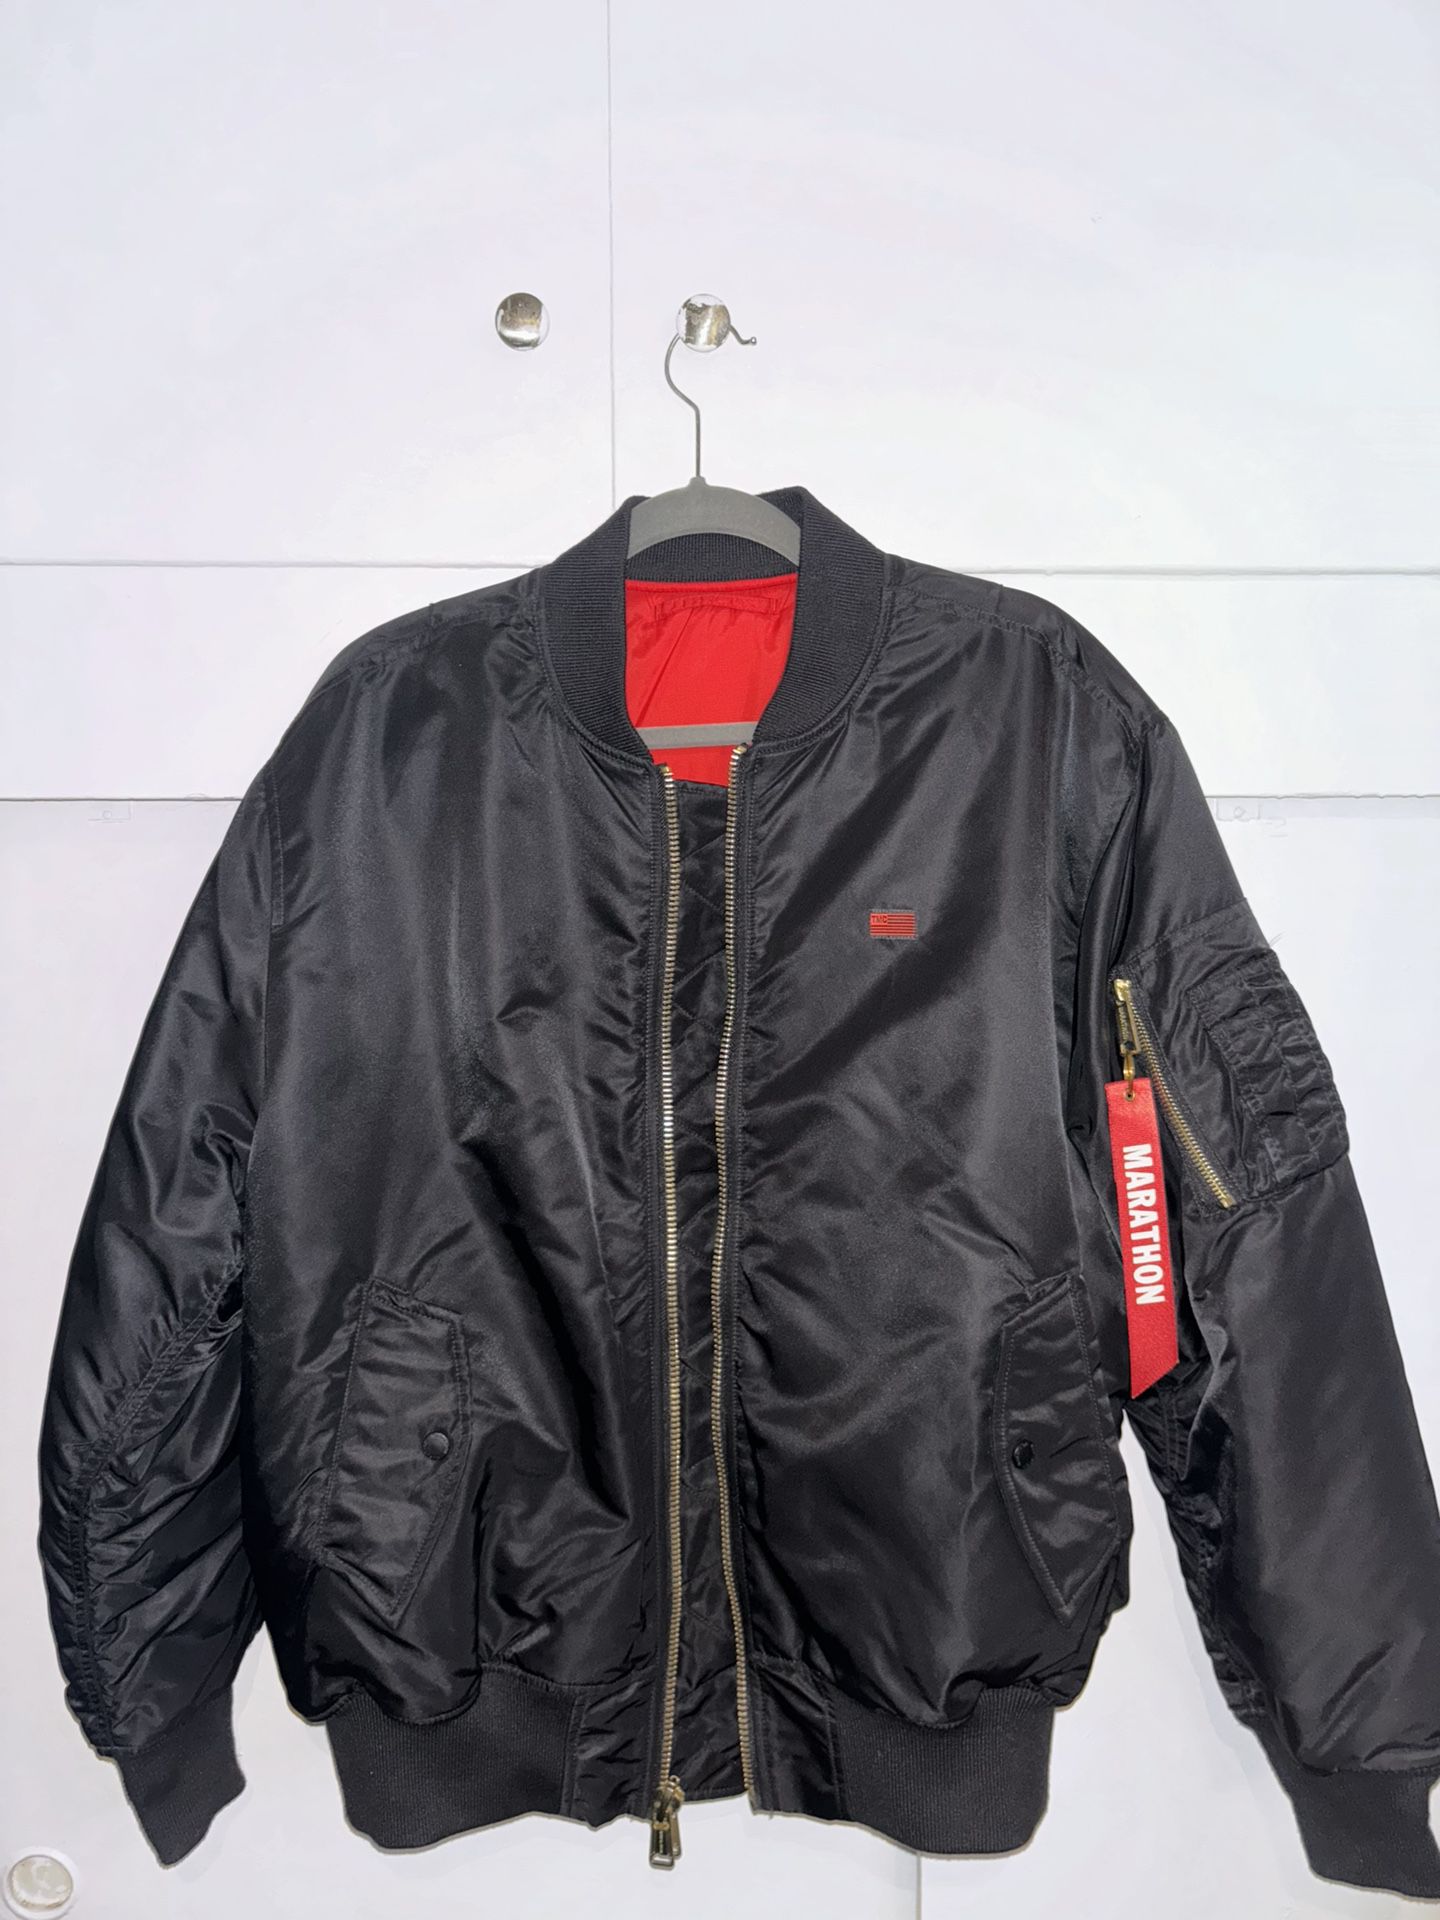 The Marathon clothing bomber Jacket